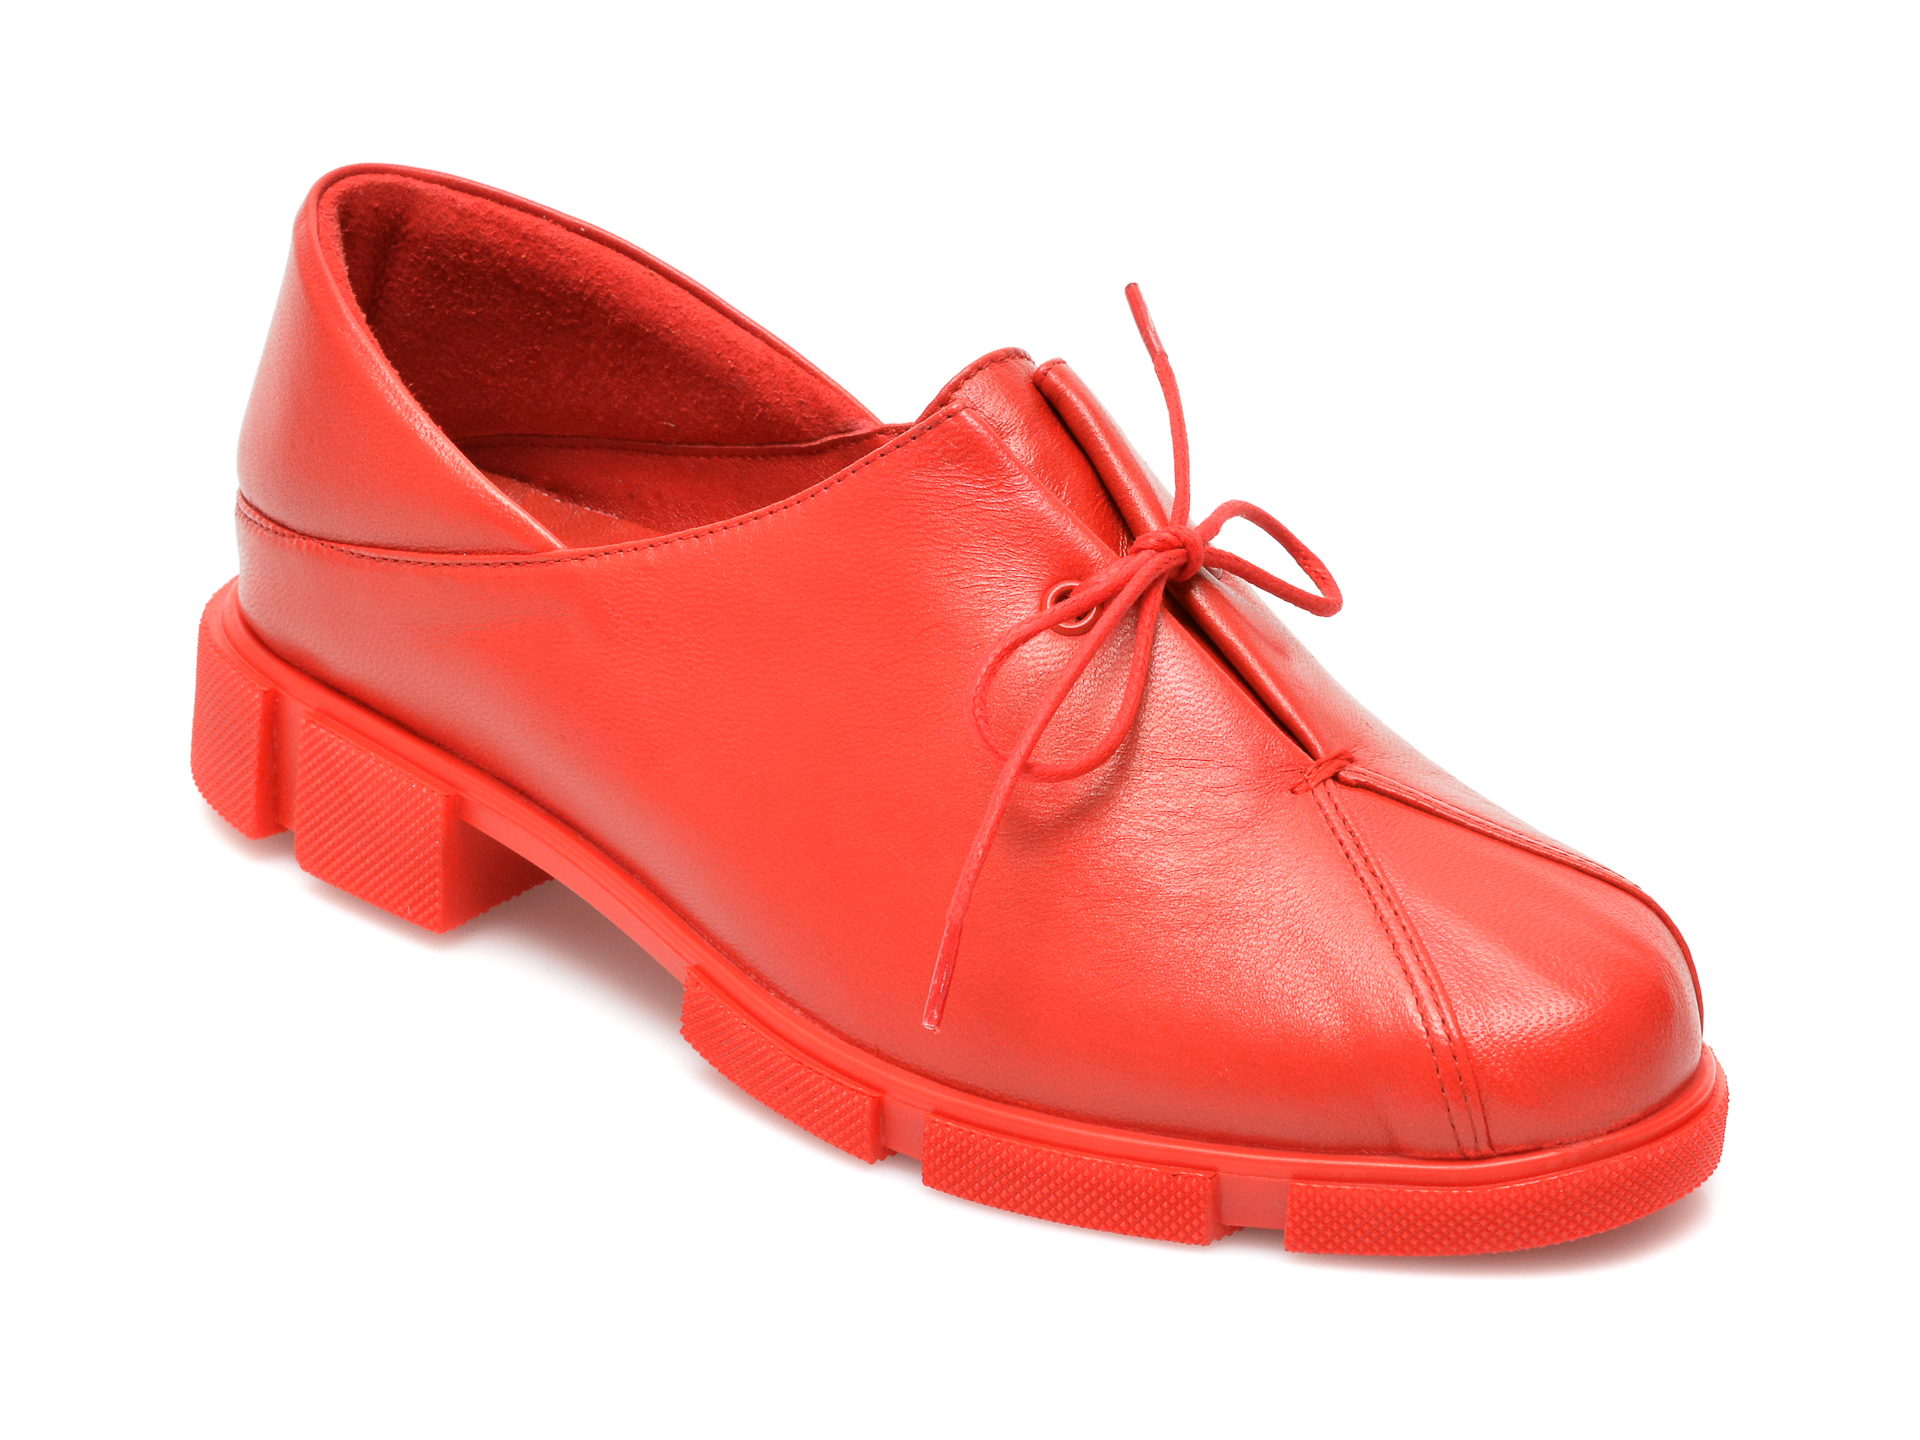 Pantofi MOLLY BESSA rosii, MN120, din piele naturala Molly Bessa